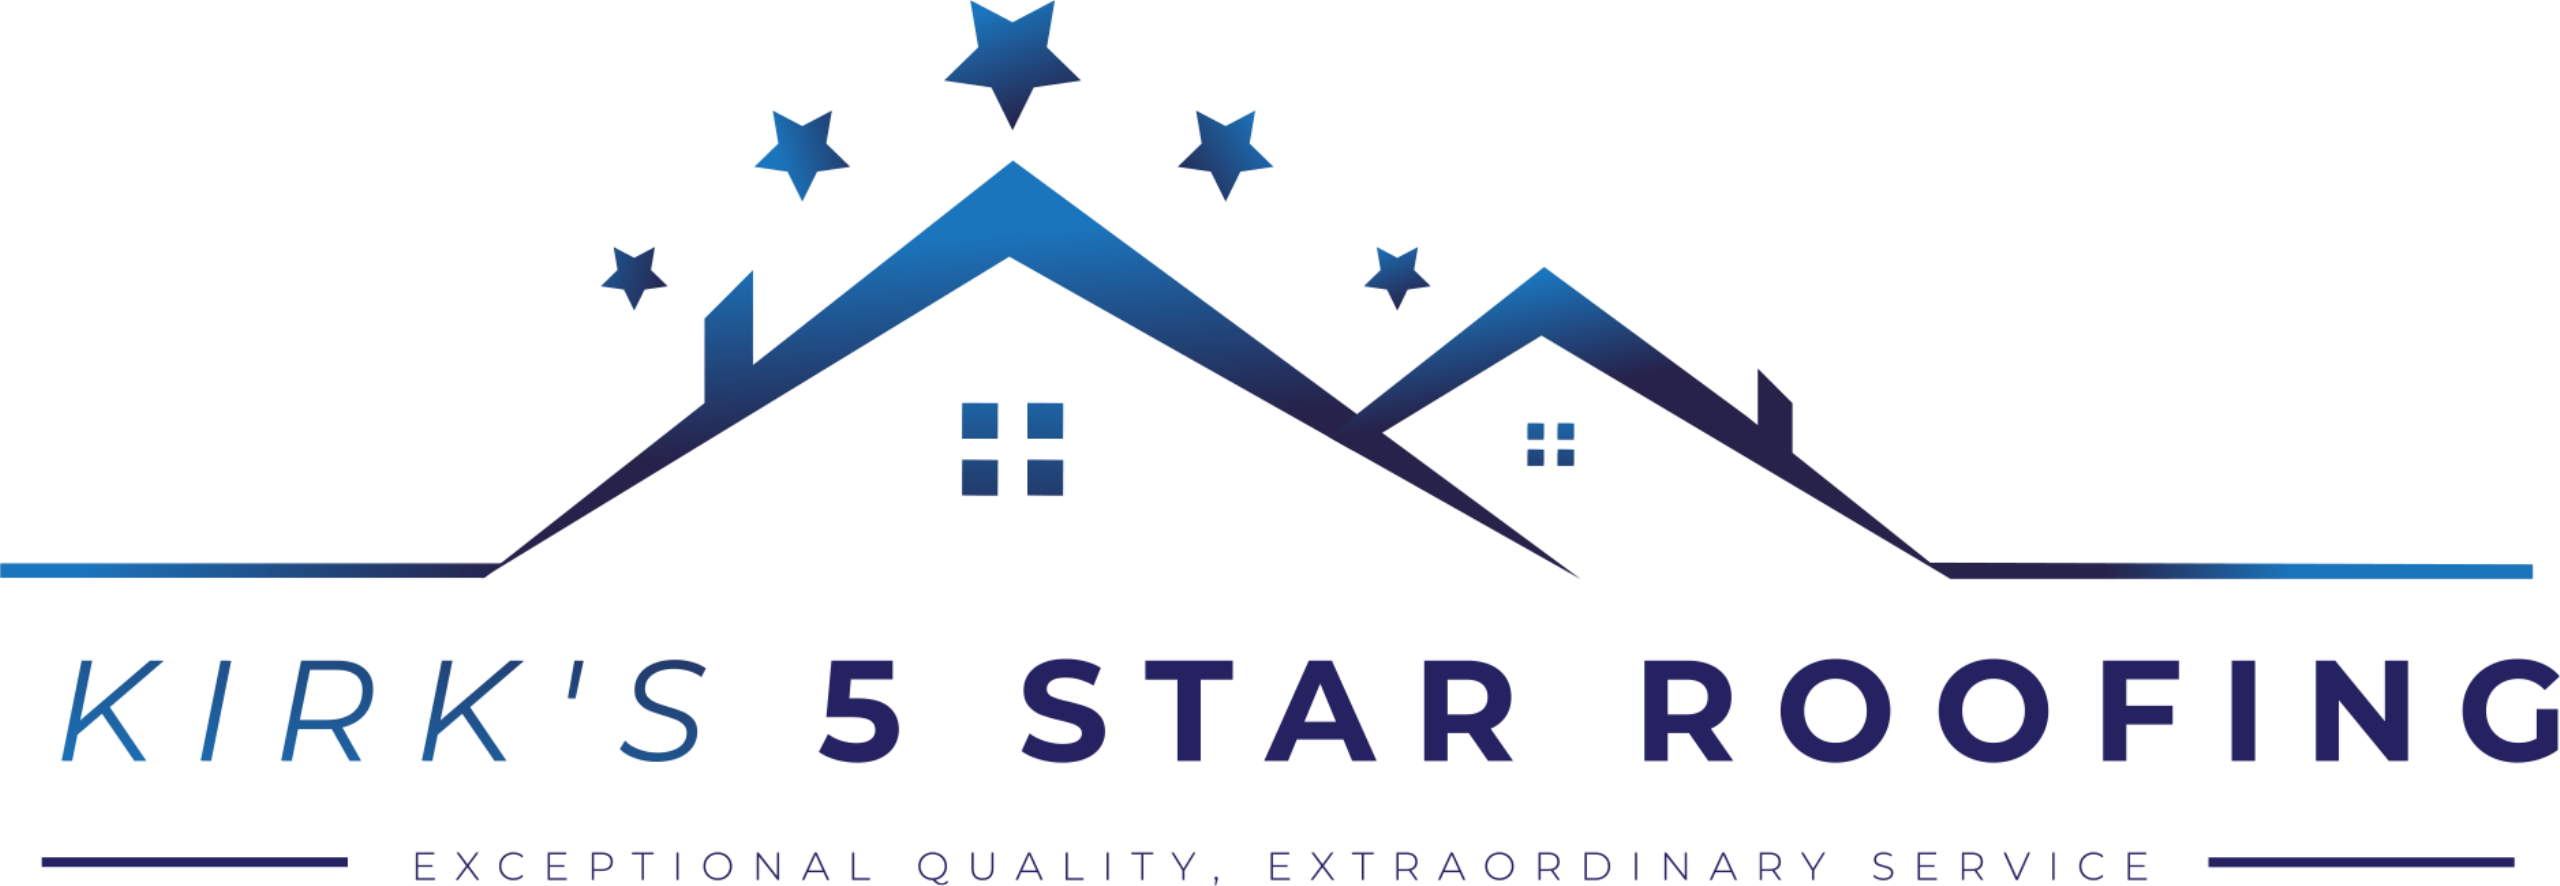 Kirk's 5 Star Roofing Logo